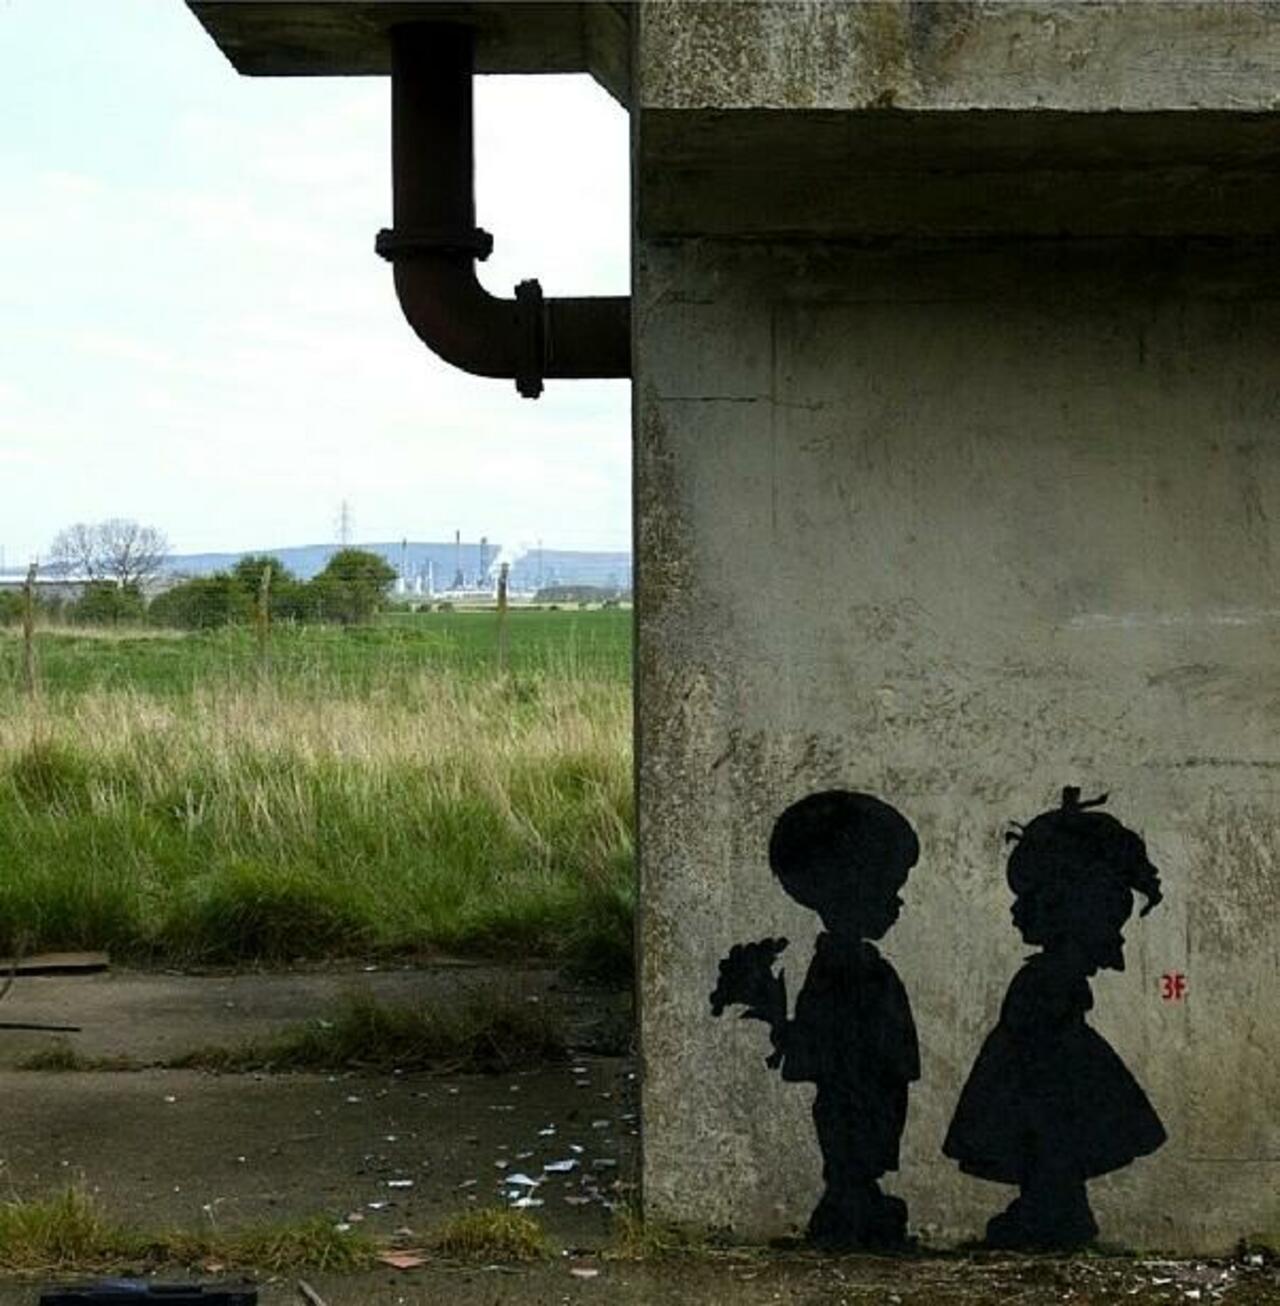 RT @GoogleStreetArt: Found love in a hopeless place!

Street Art by 3fountains 

#art #mural #graffiti #streetart http://t.co/5OJ1Spgu16